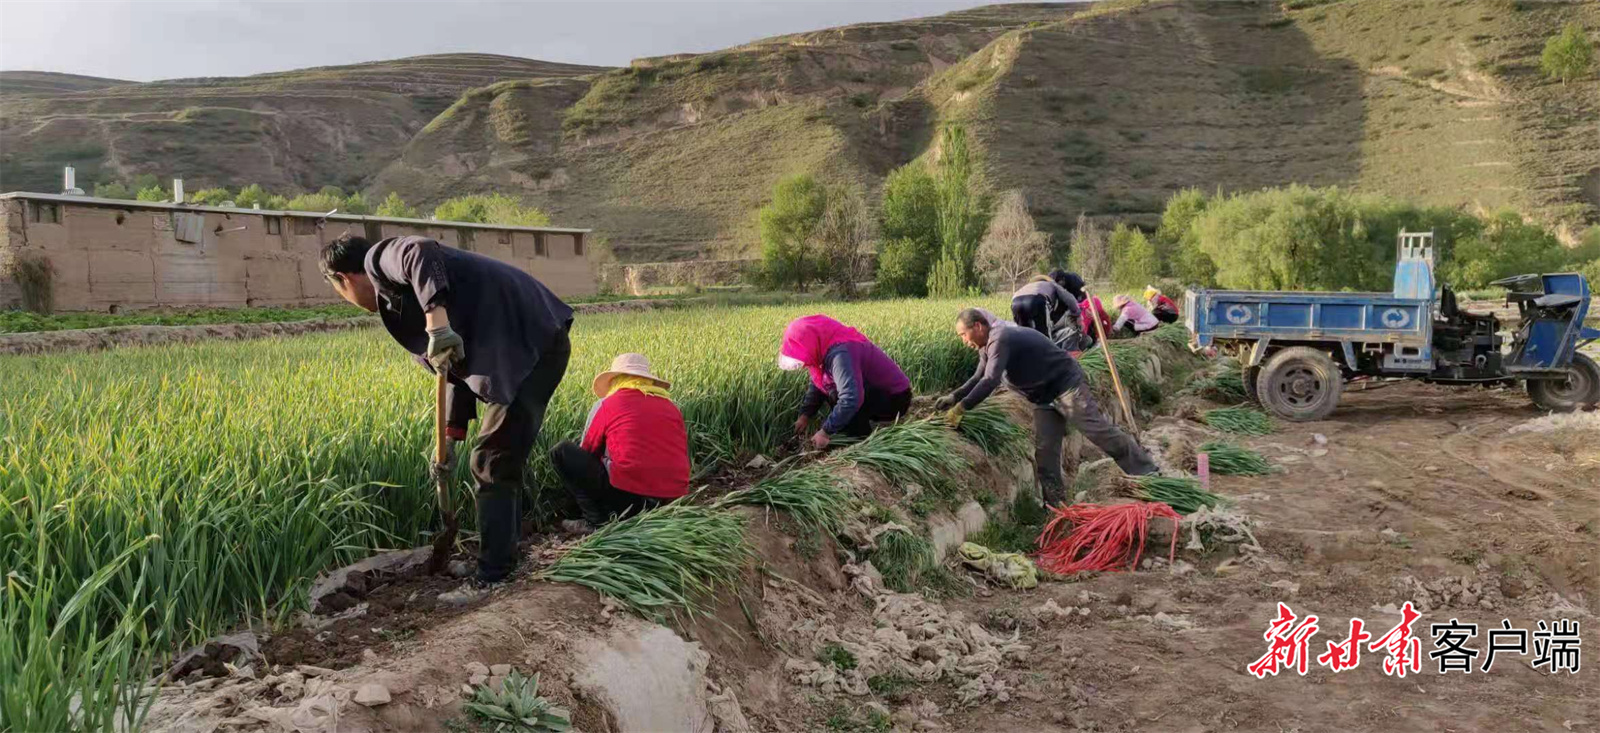 临洮县辛店镇泉湾村村民在收获成熟的蒜苗